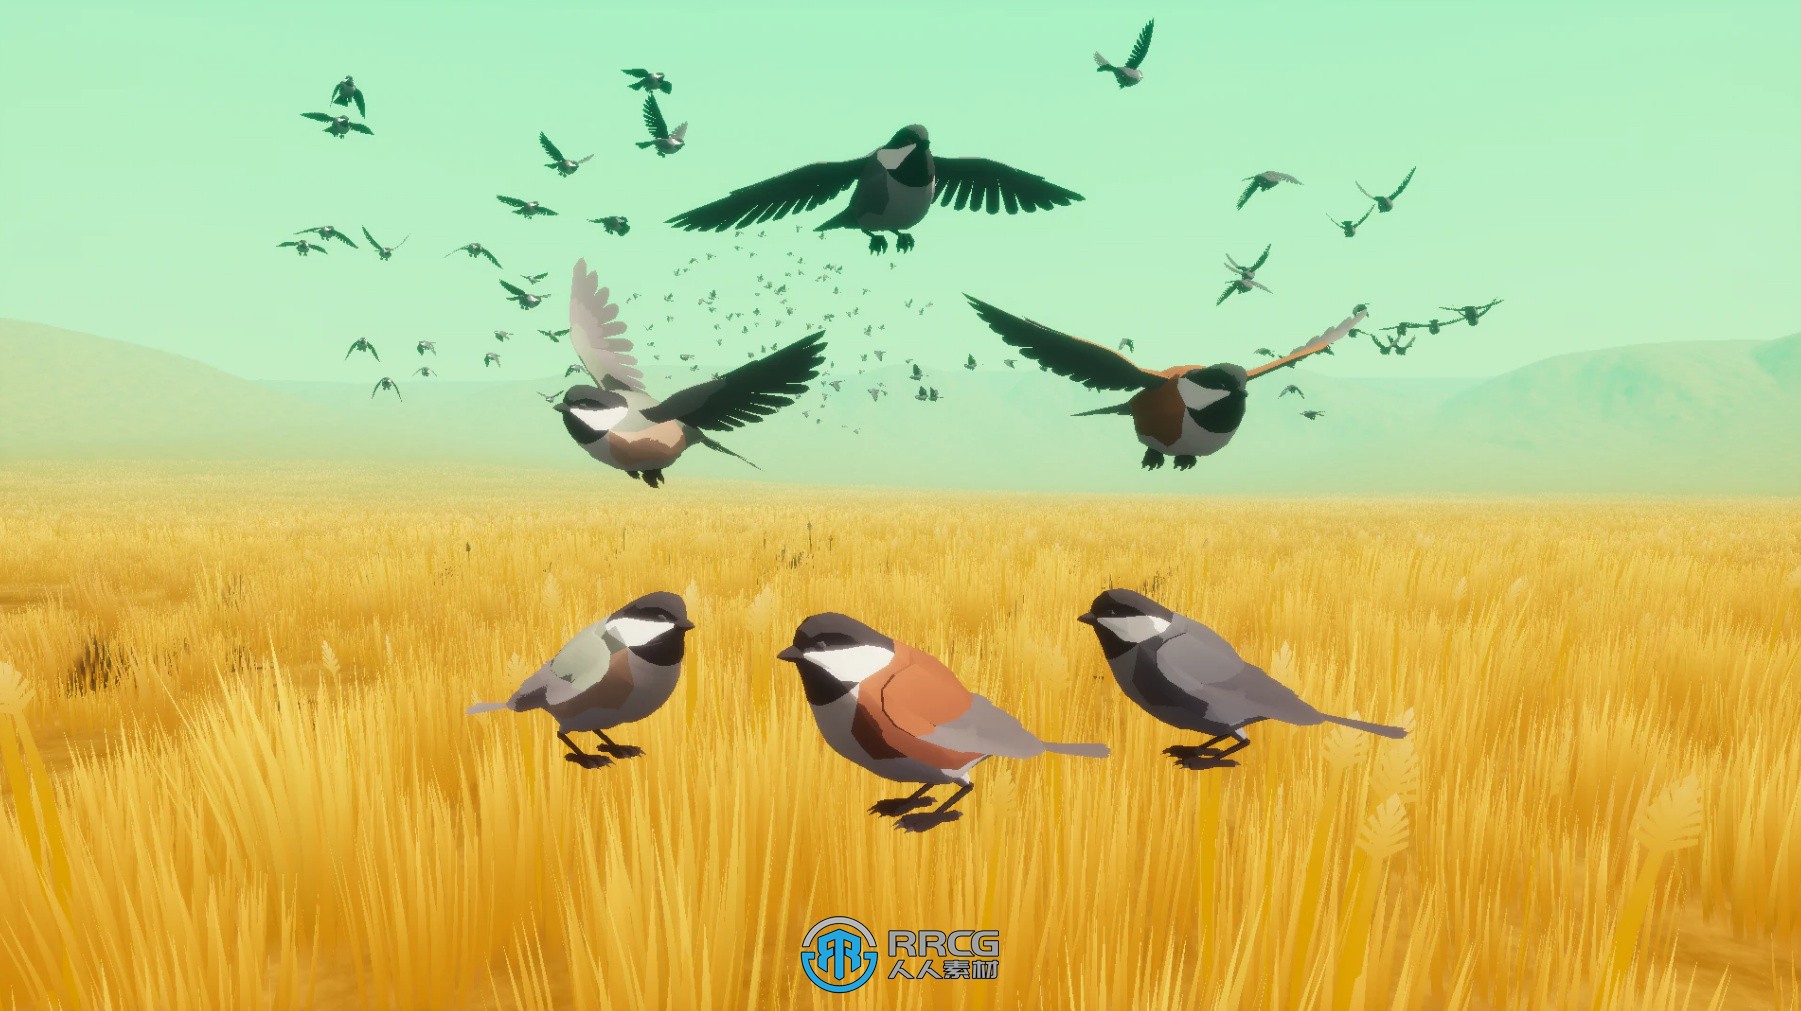 鸟类鸟群系统虚幻引擎UE游戏素材